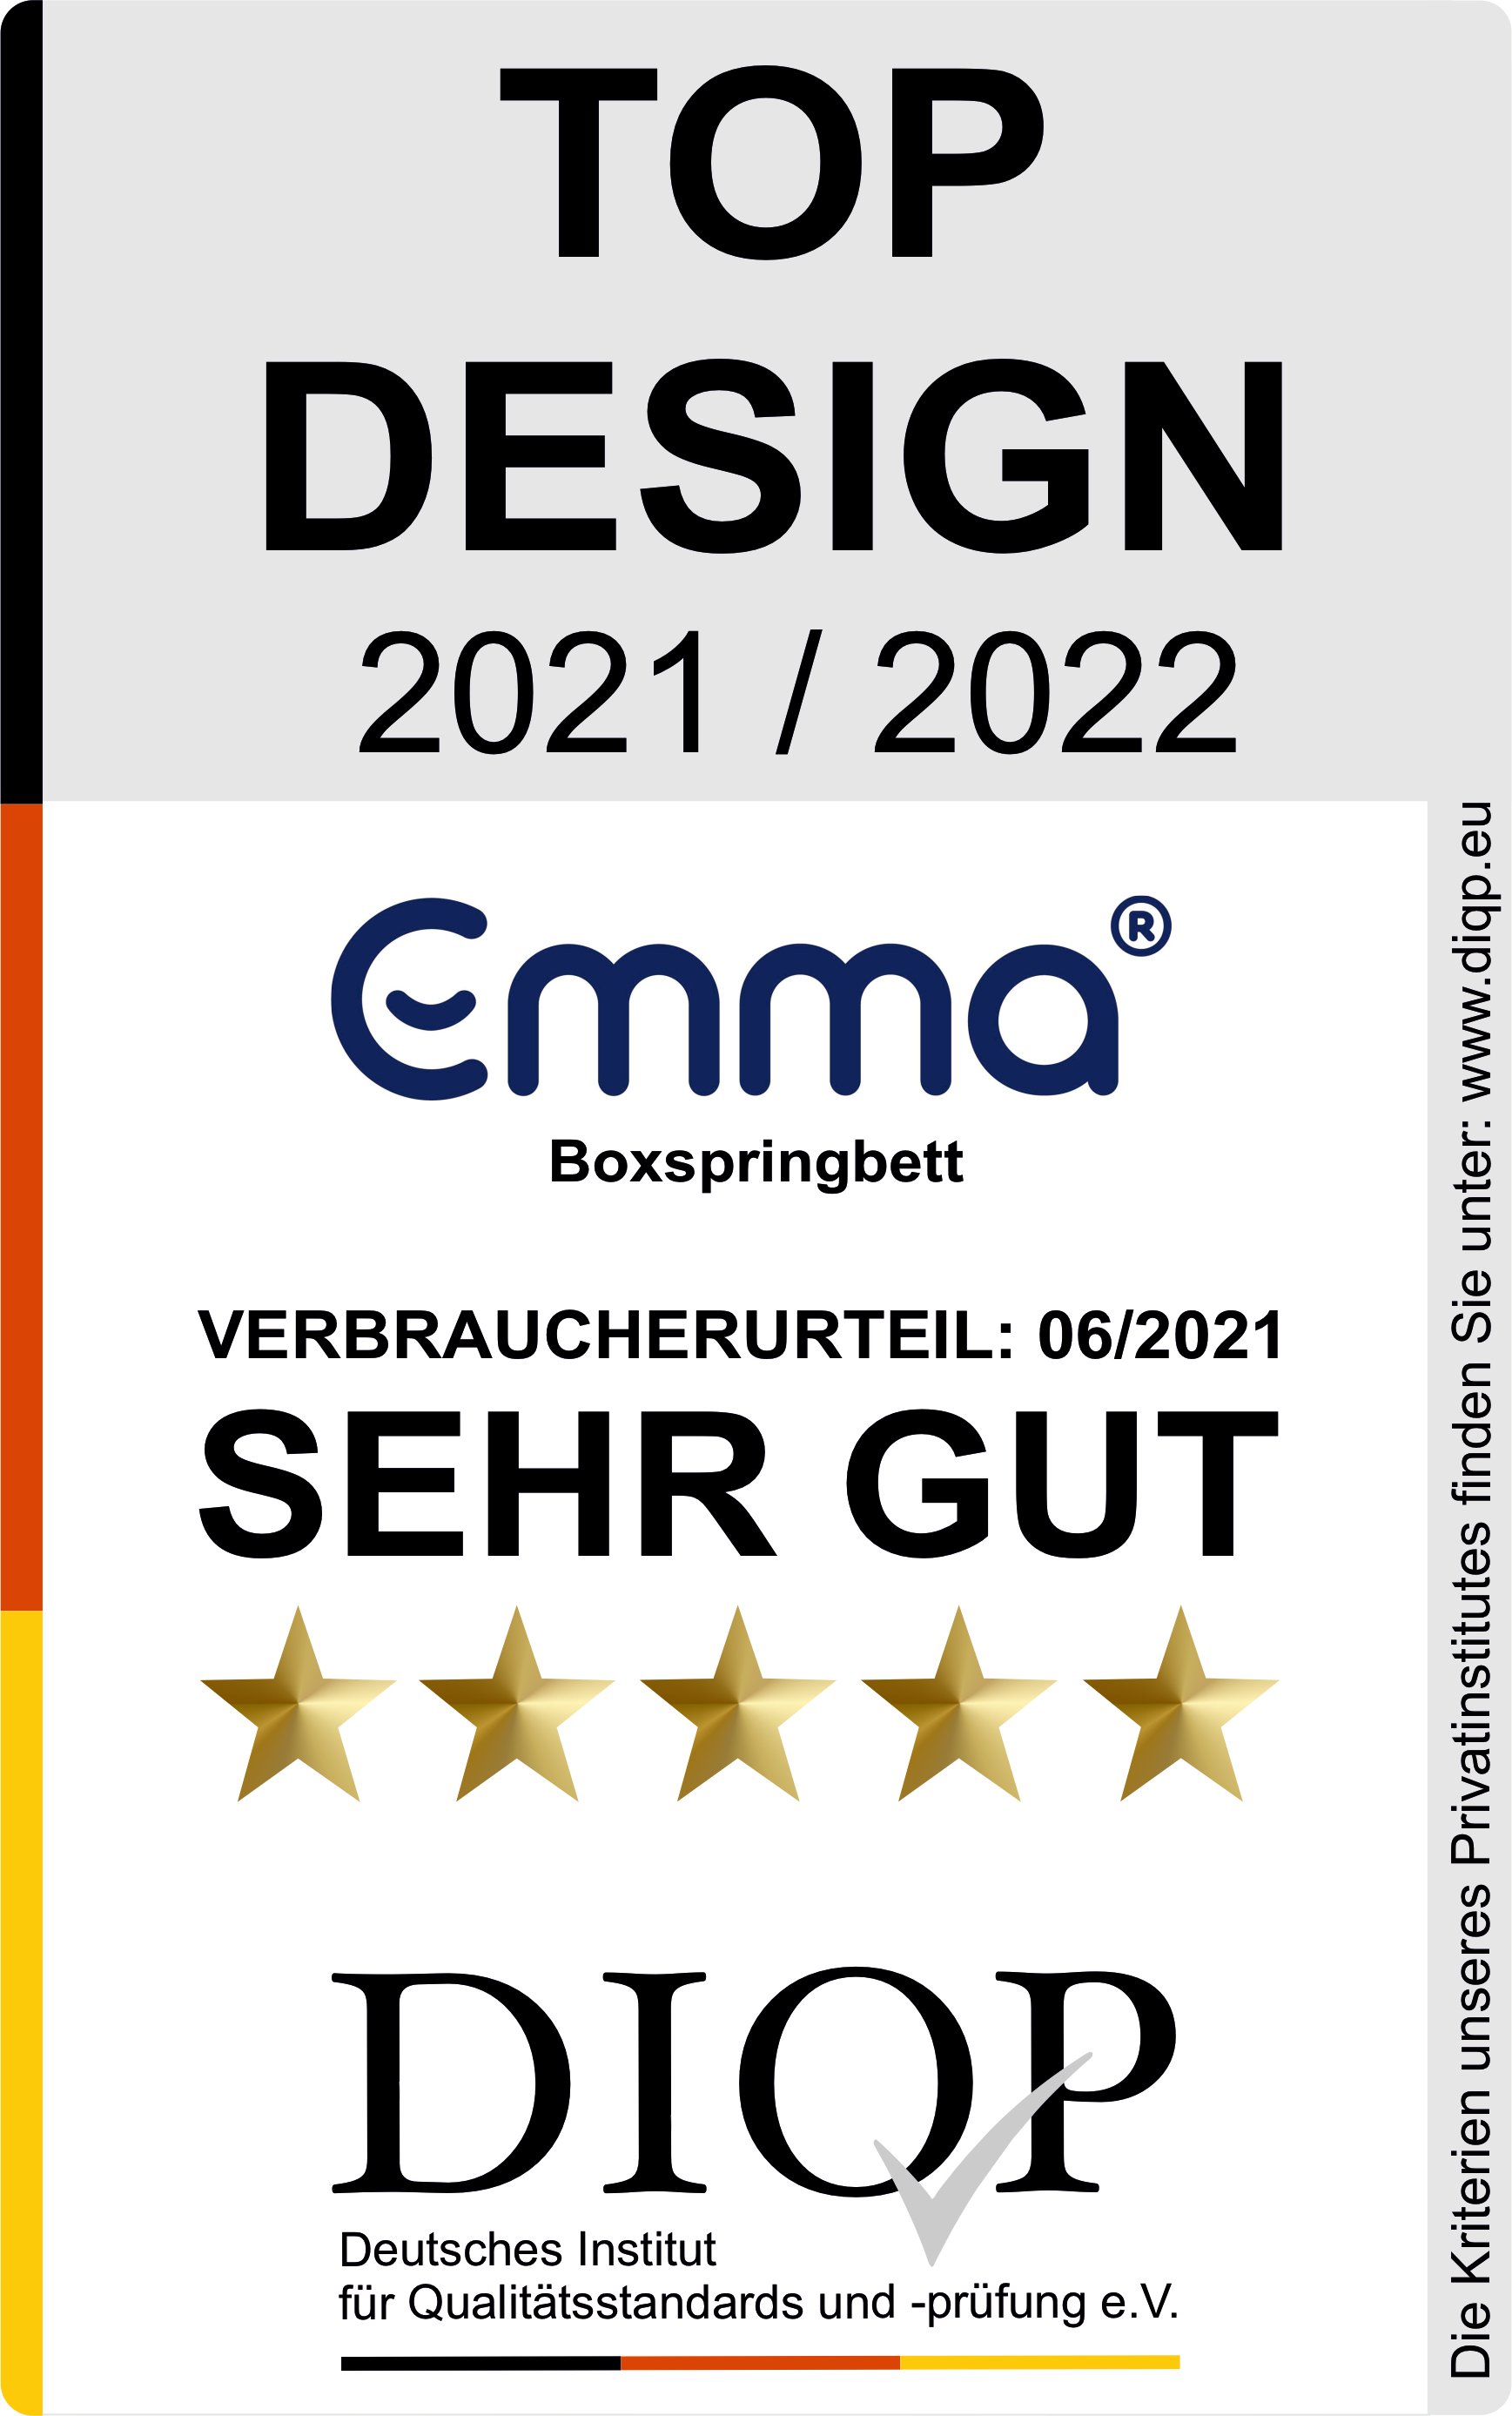 DIQP Top Design Auszeichnung 2021